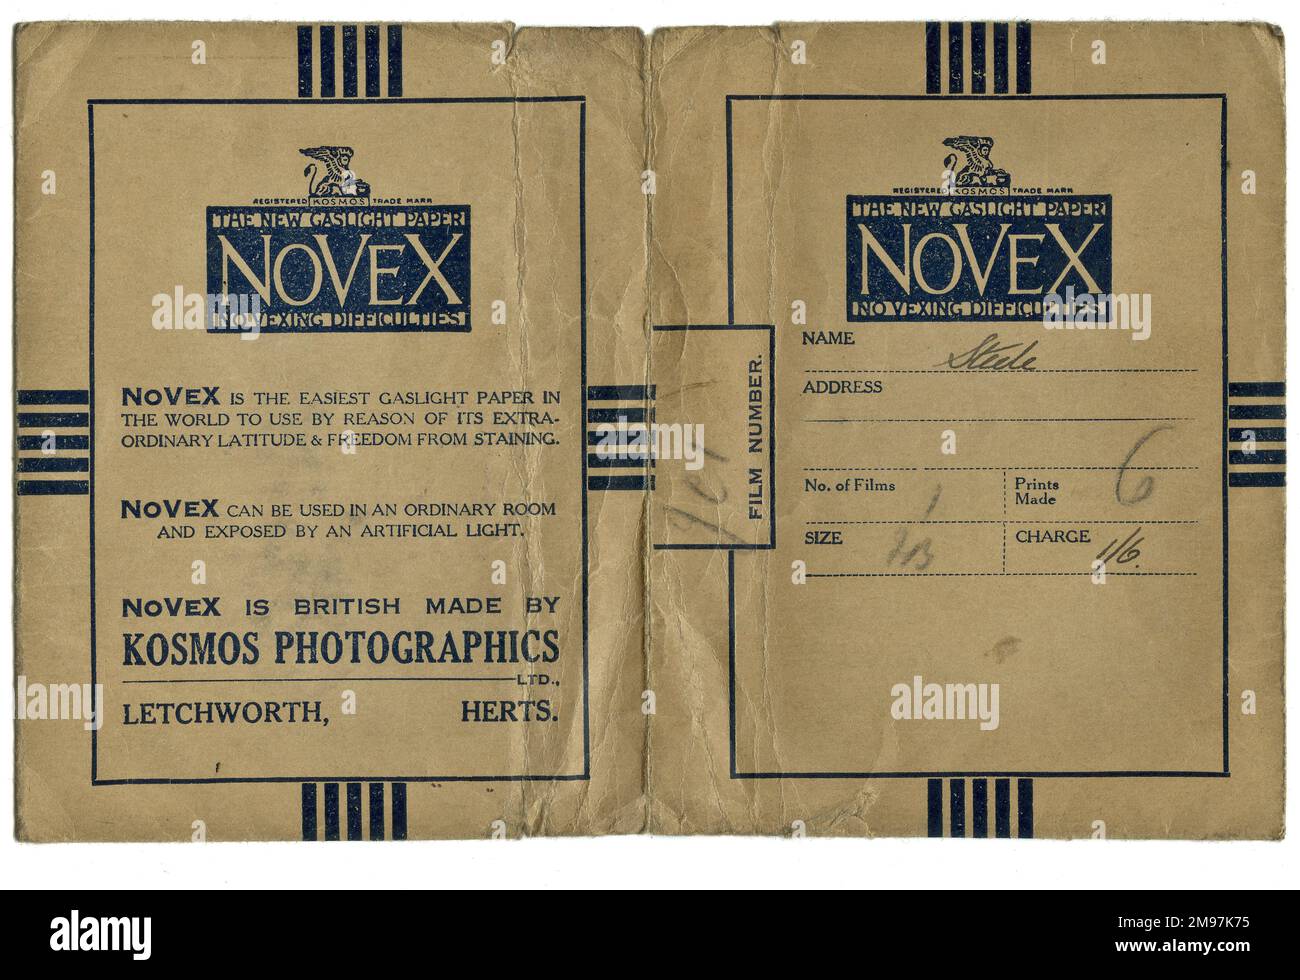 Película fotográfica de publicidad Novex Gaslight Paper hecho por Kosmos Photographics, Letchworth, Hertfordshire. El nombre del cliente es Steele y el costo de desarrollo es de un chelín y seis peniques. Foto de stock